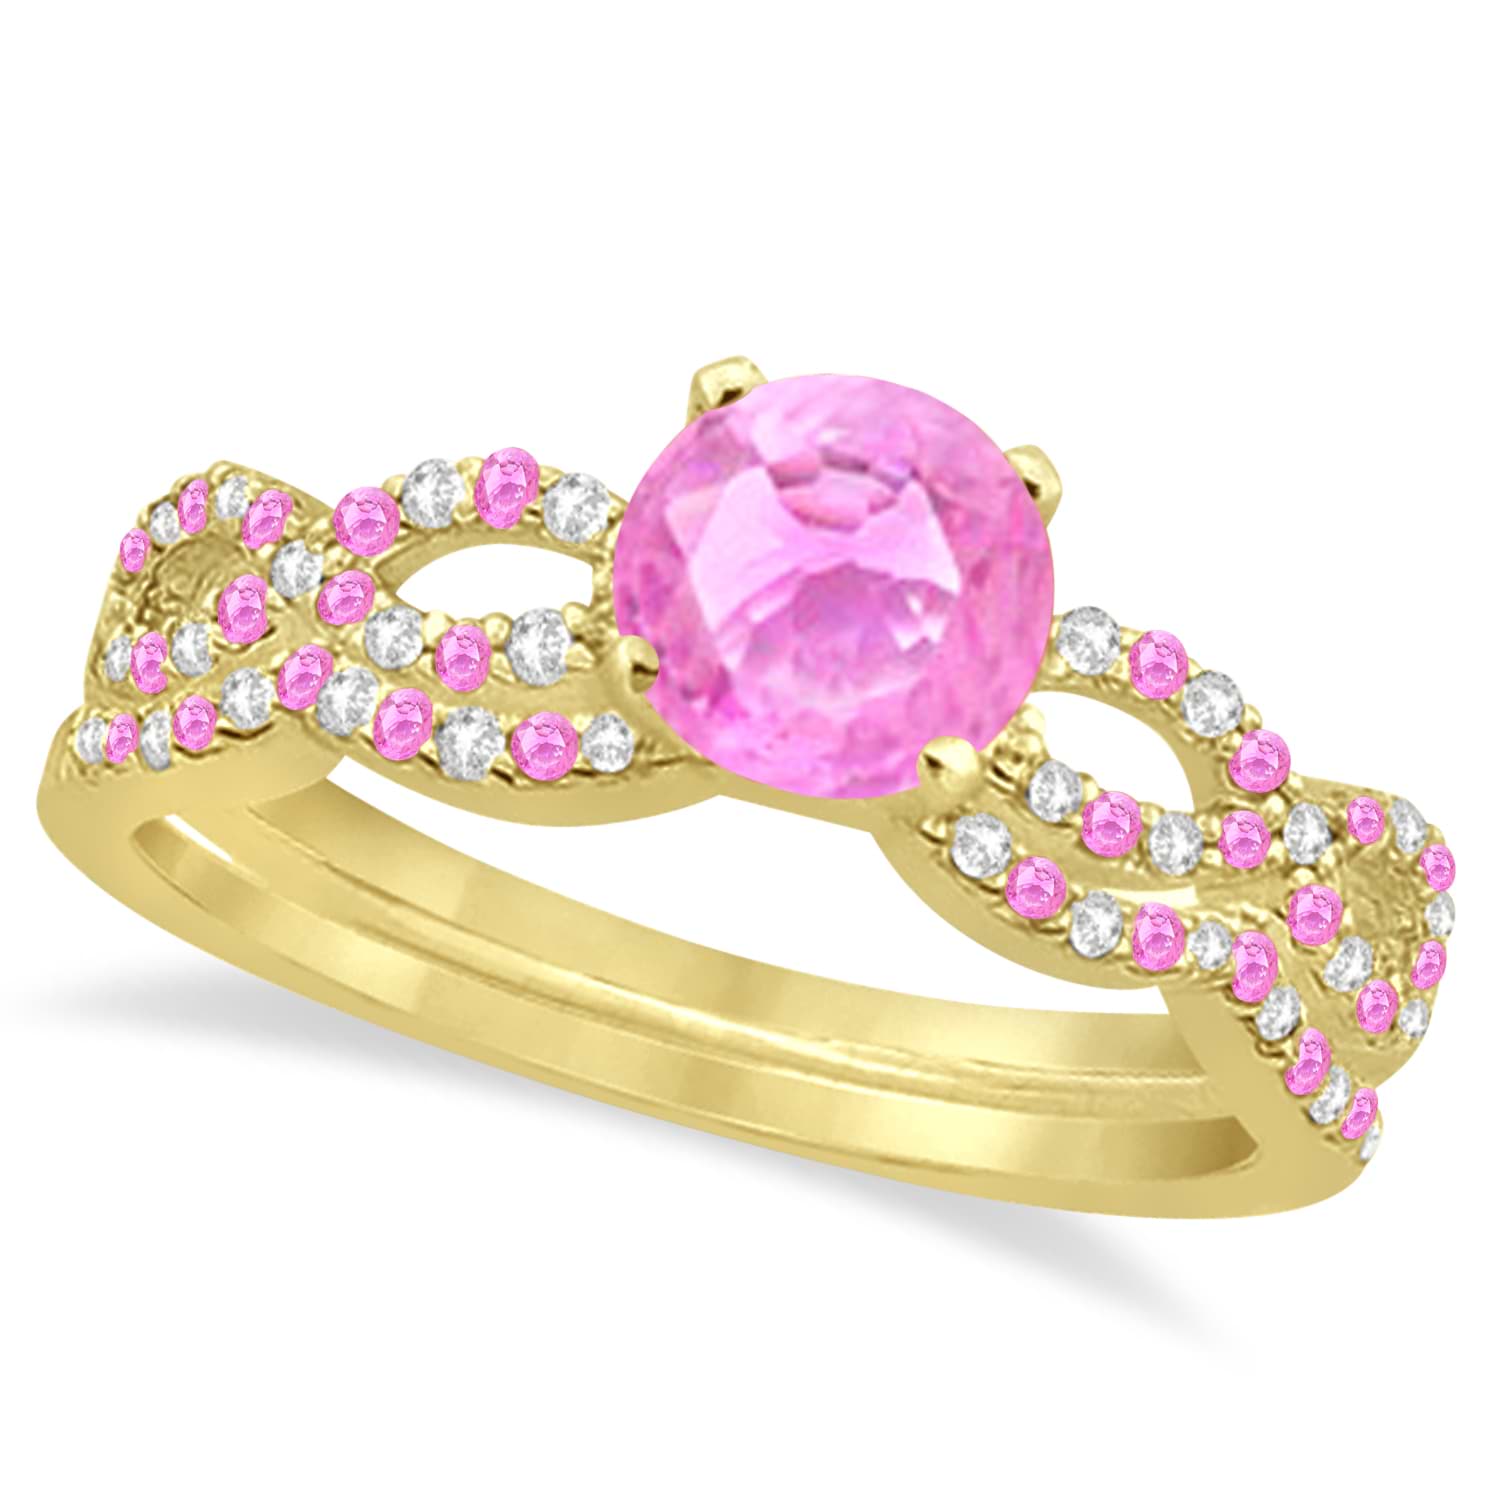 Infinity Style Pink Sapphire & Diamond Bridal Set 14k Yellow Gold 1.29ct